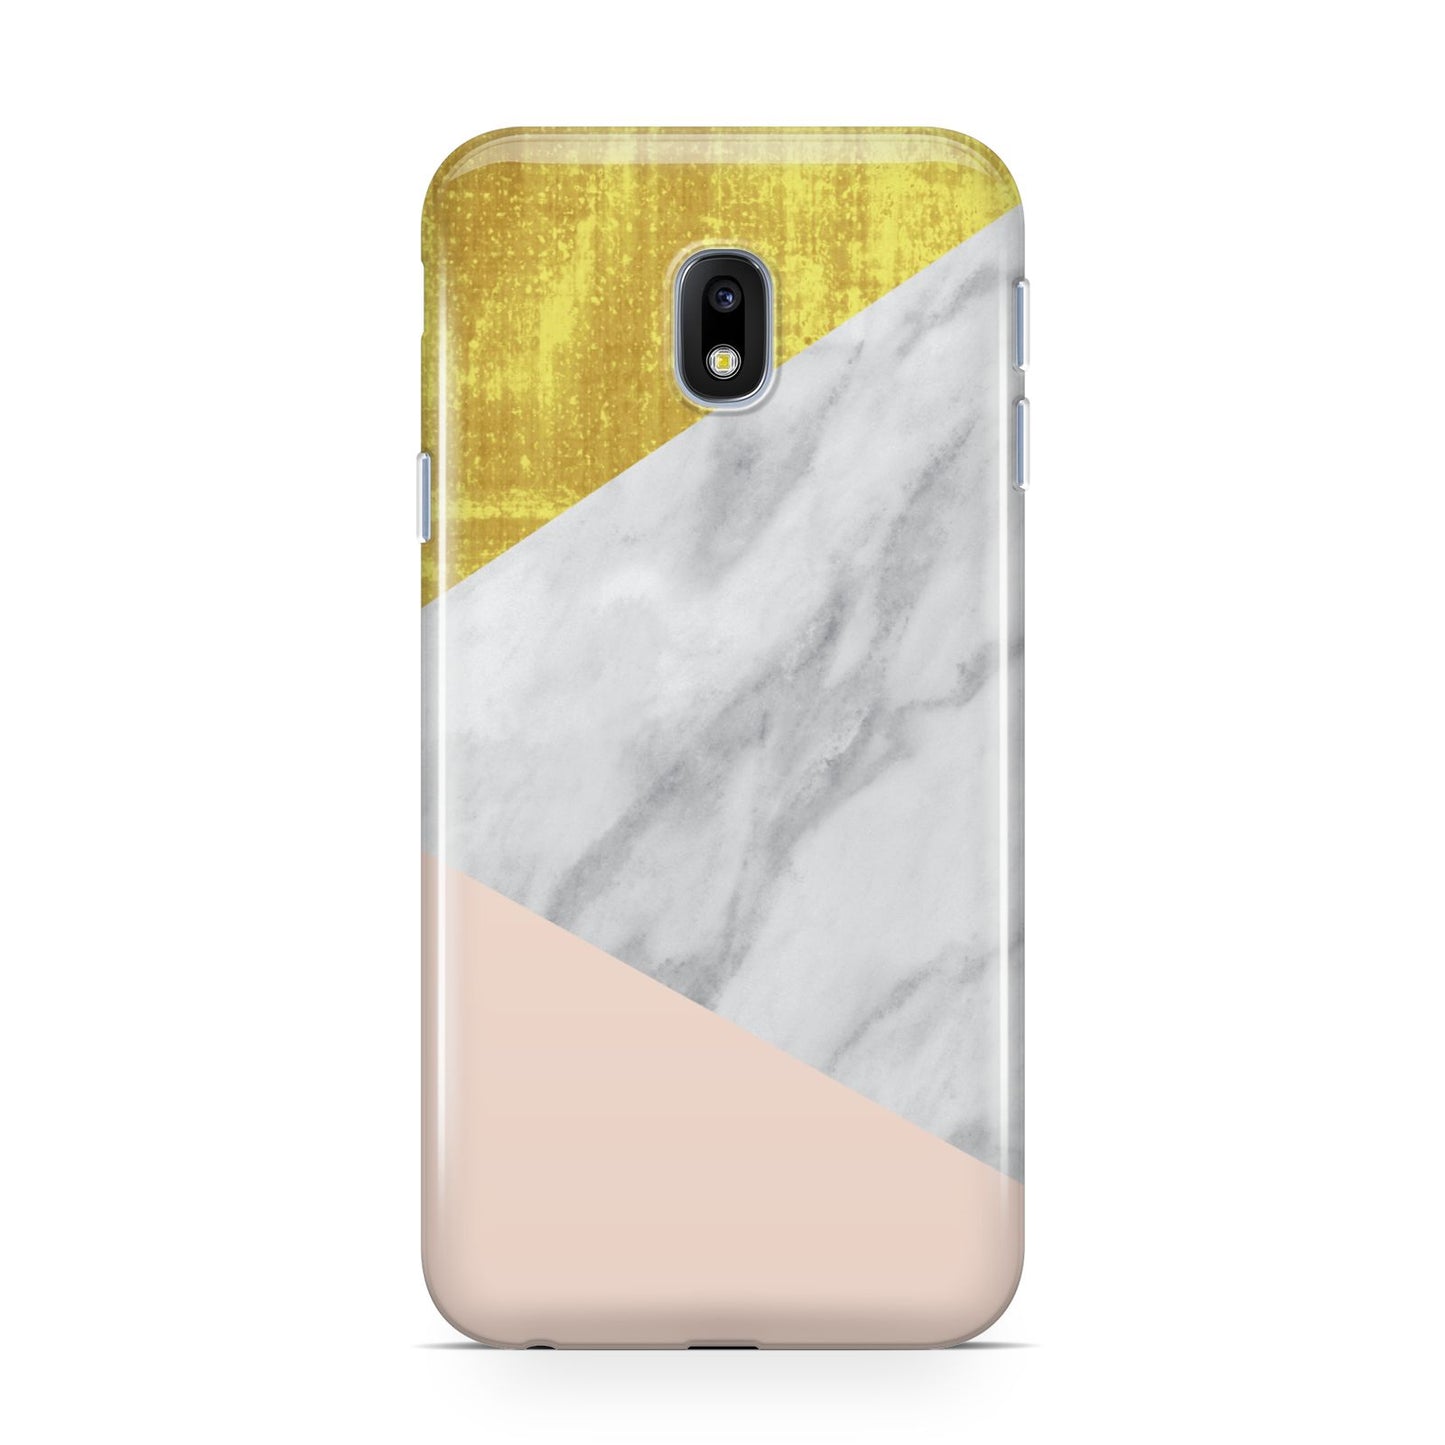 Marble White Gold Foil Peach Samsung Galaxy J3 2017 Case